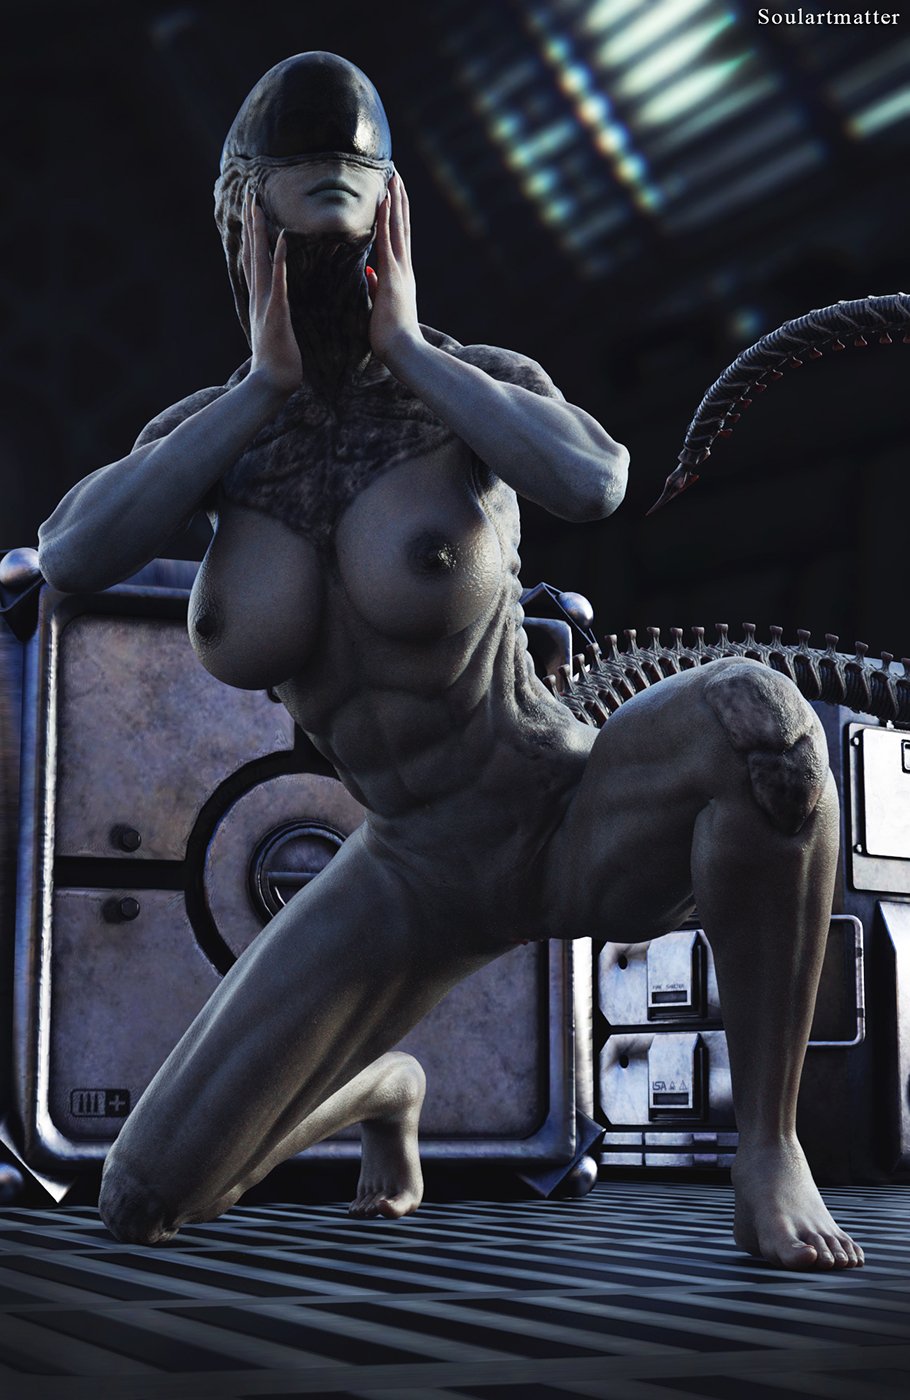 Alien girl naked - 35 photo